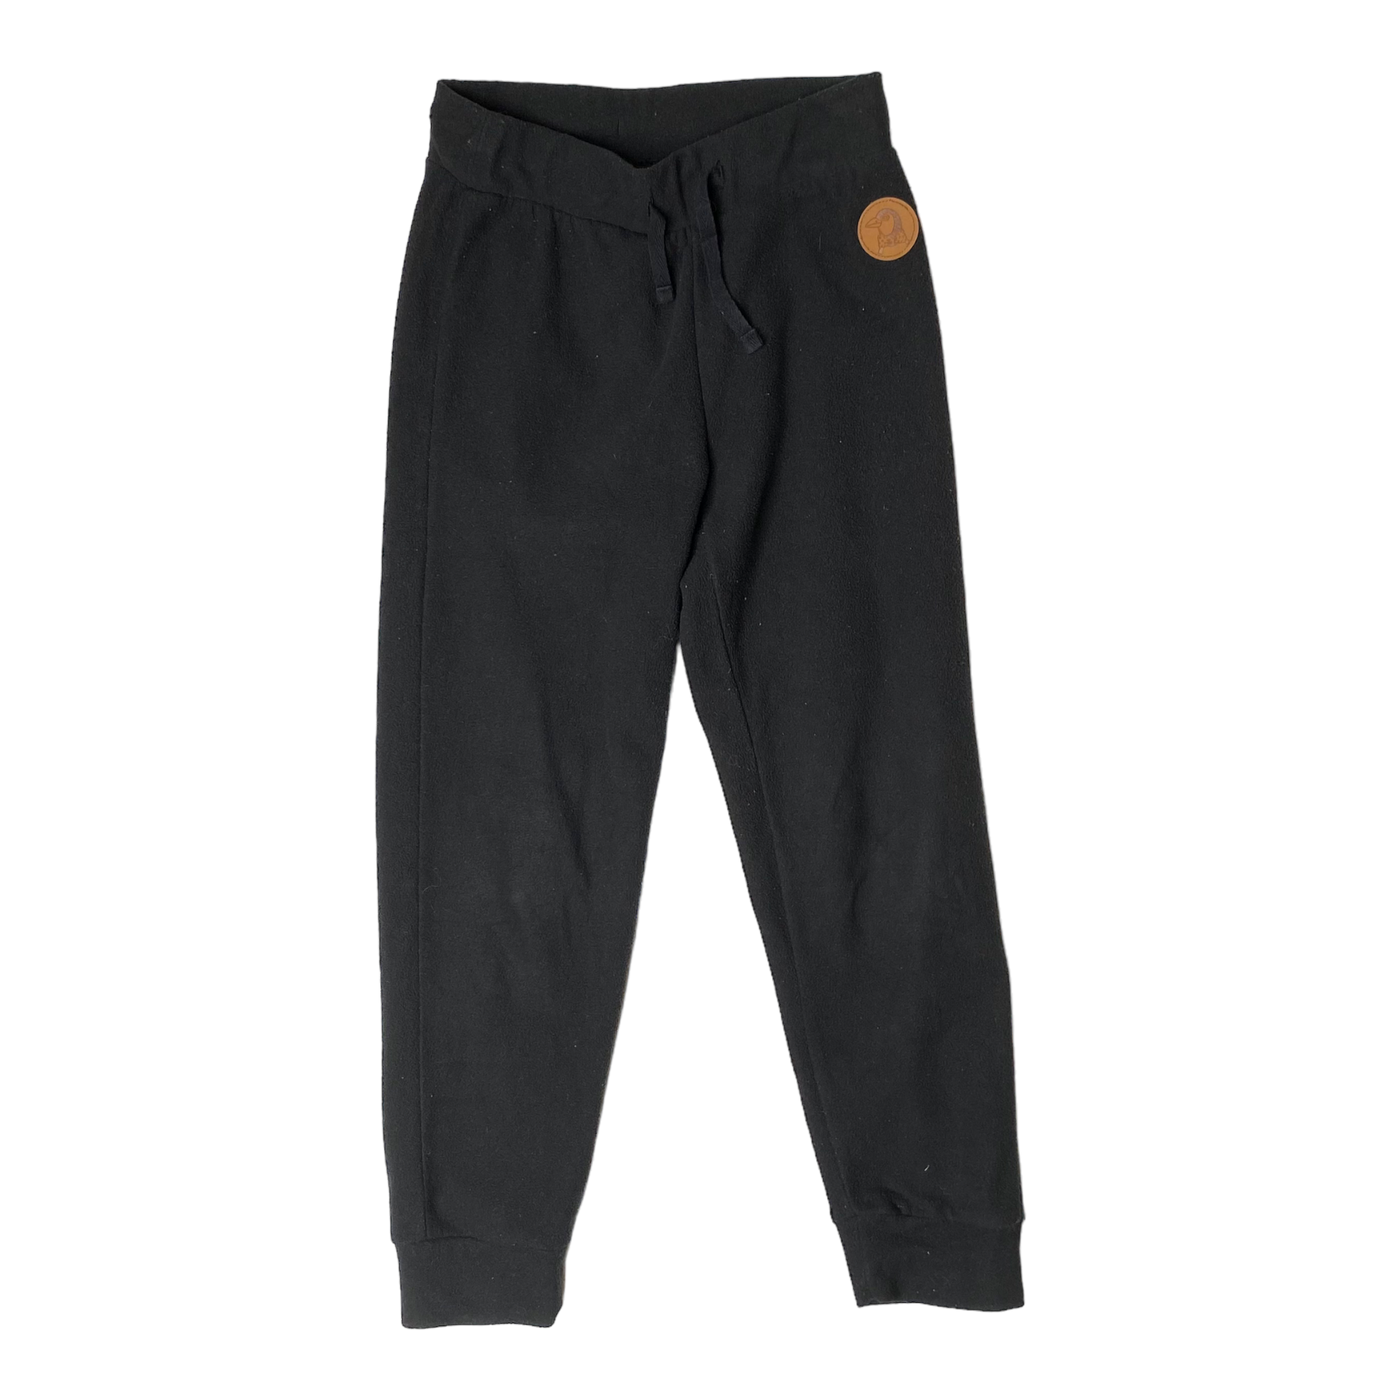 Mini Rodini fleece pants, black | 116/122cm